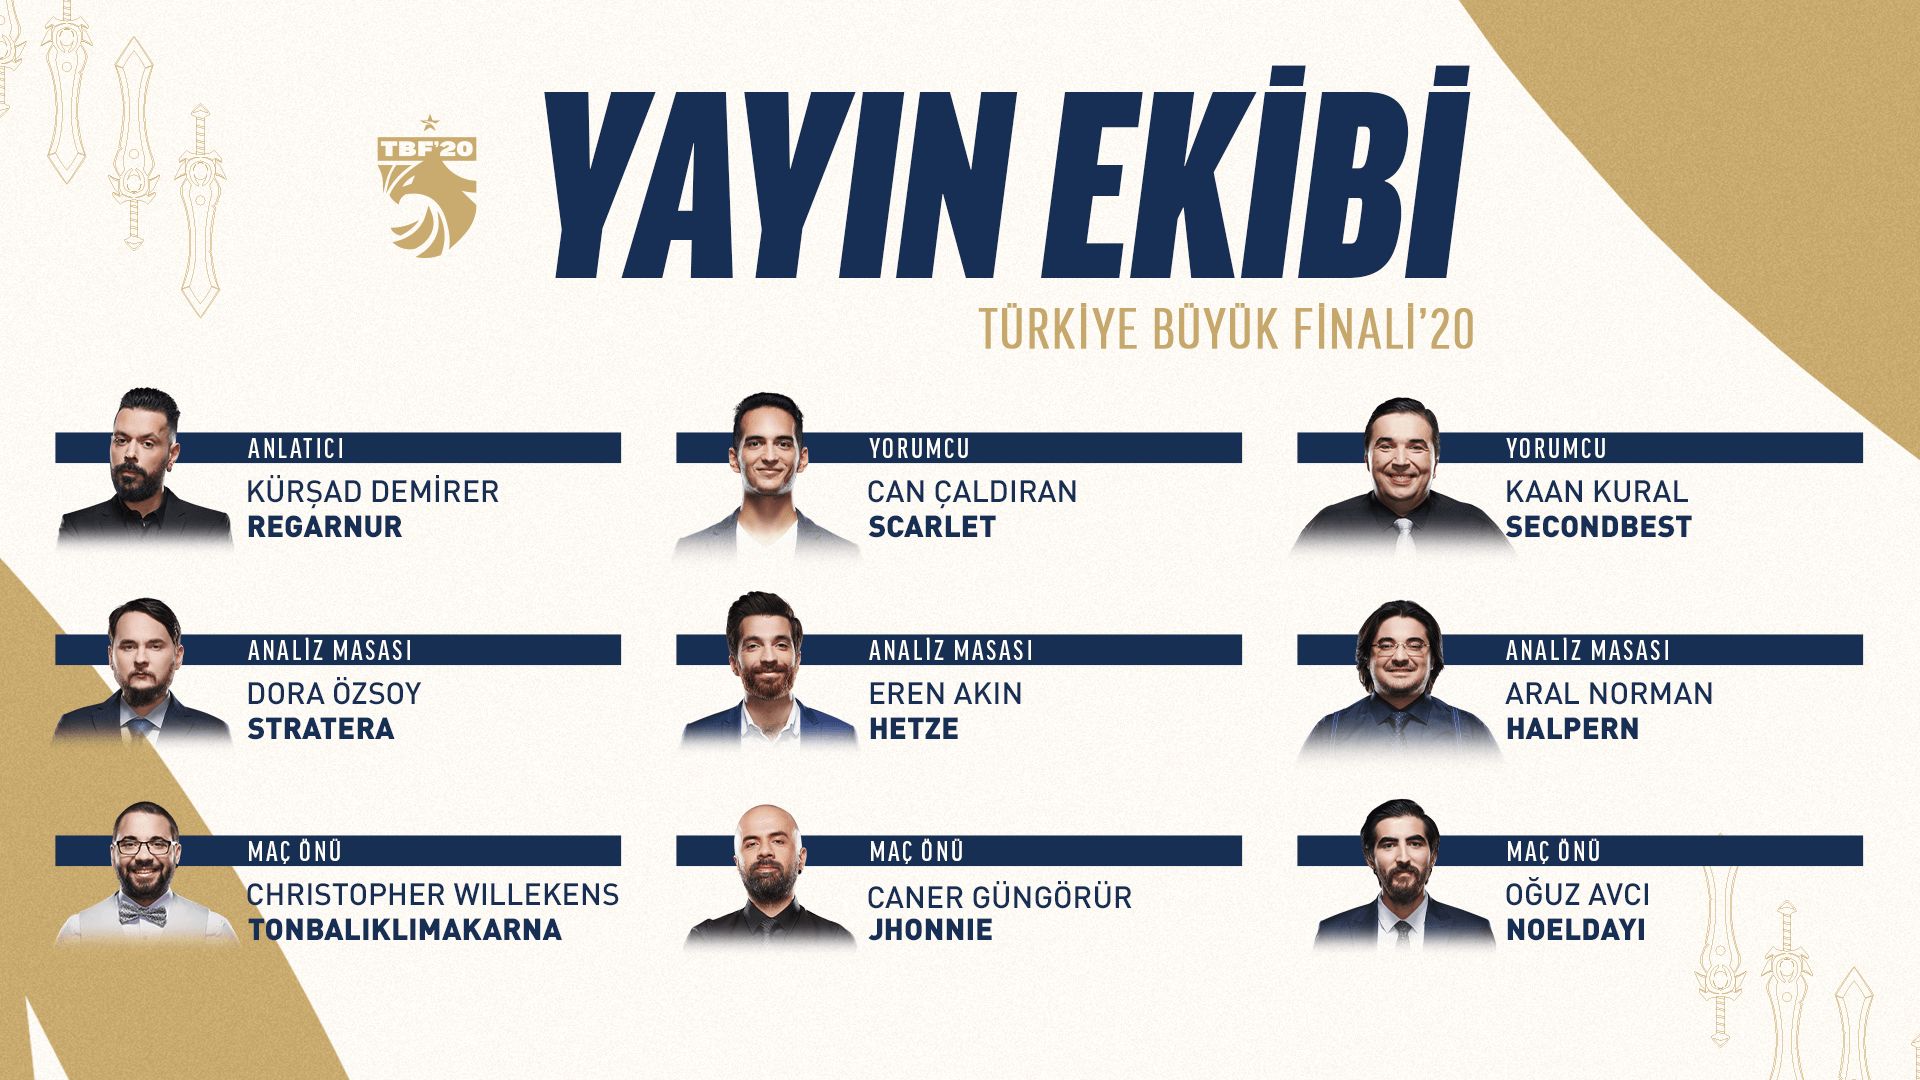 VFŞL Türkiye Büyük Finali etkinlik takvimi açıklandı